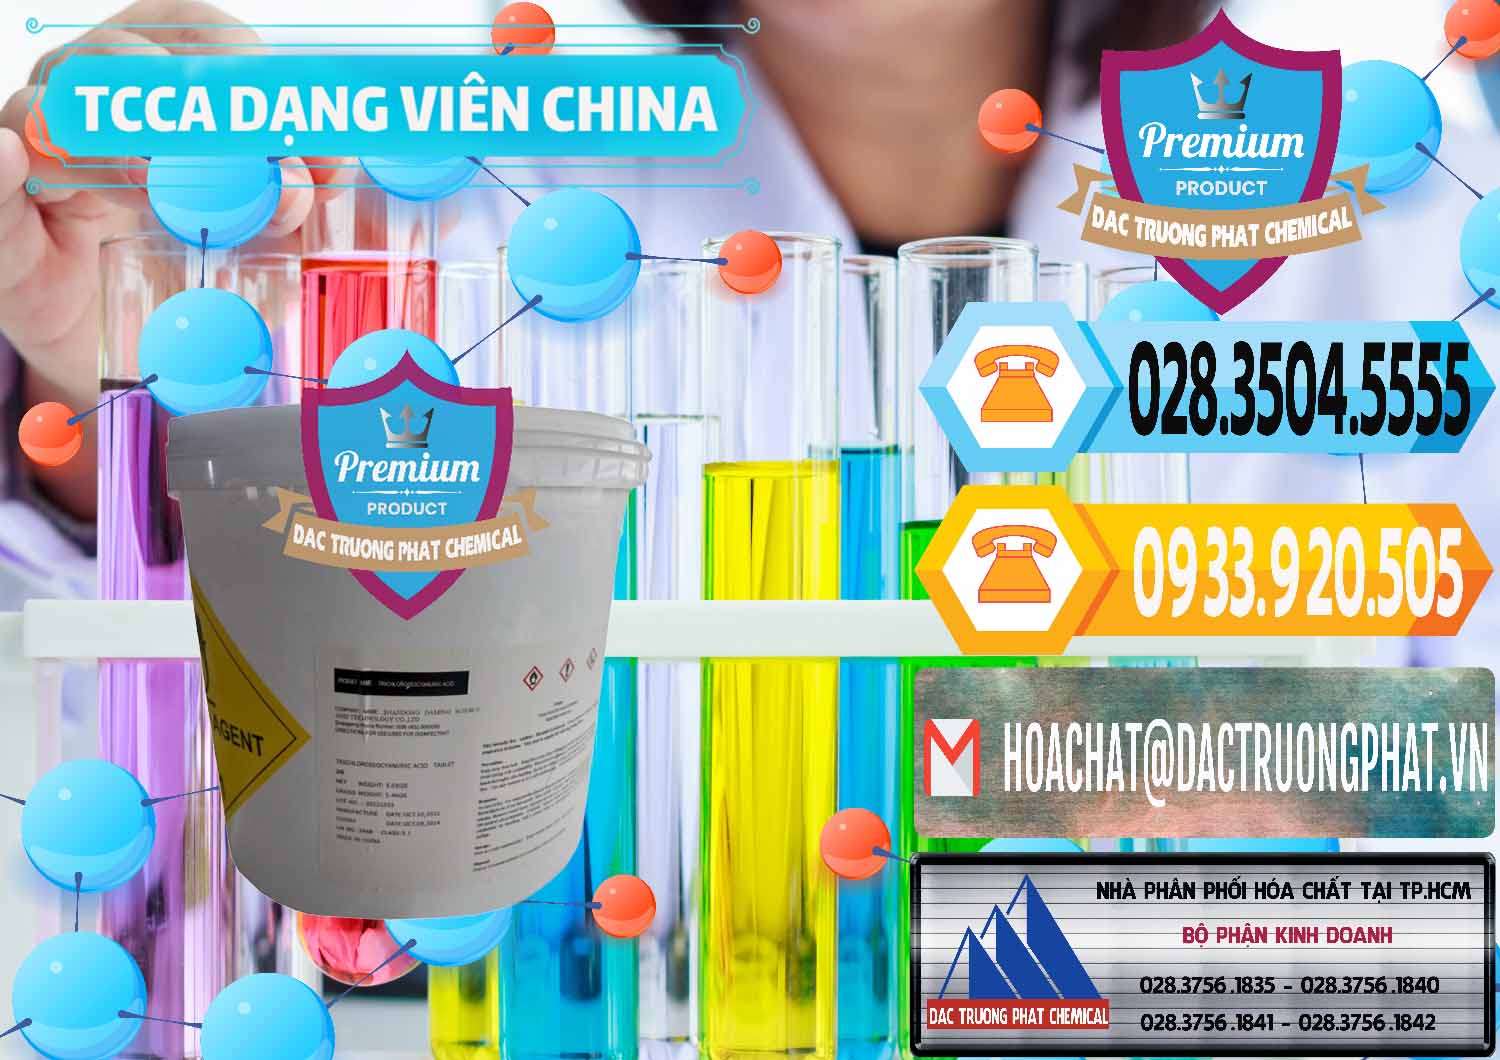 Cty cung cấp _ bán TCCA - Acid Trichloroisocyanuric Dạng Viên Thùng 5kg Trung Quốc China - 0379 - Công ty cung ứng - phân phối hóa chất tại TP.HCM - hoachattayrua.net